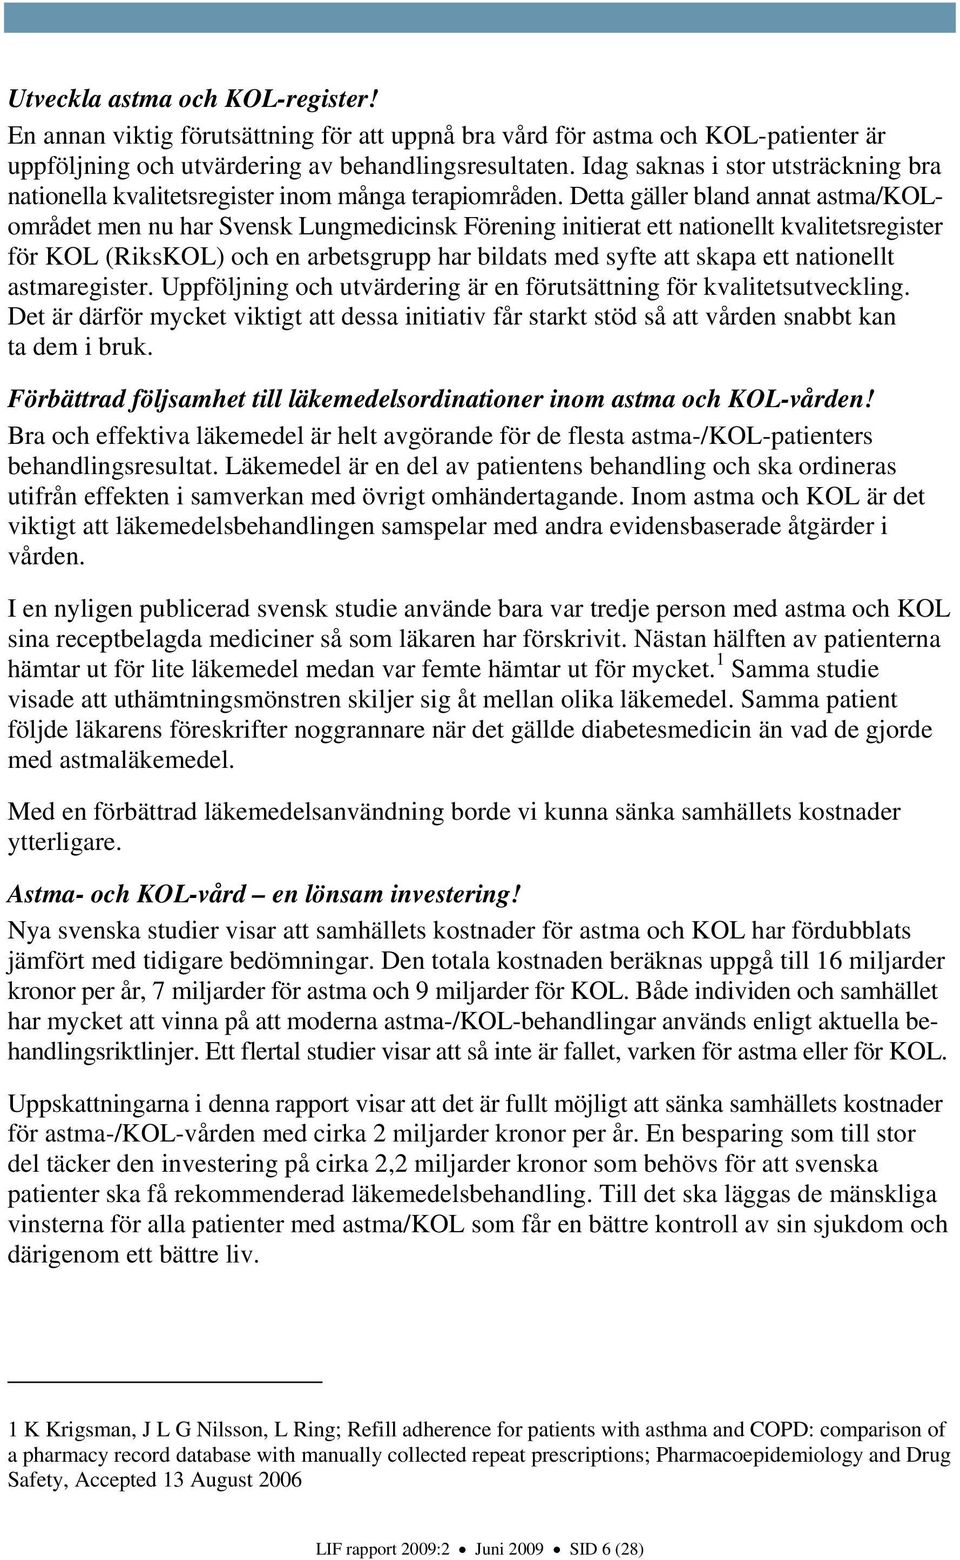 Detta gäller bland annat astma/kolområdet men nu har Svensk Lungmedicinsk Förening initierat ett nationellt kvalitetsregister för KOL (RiksKOL) och en arbetsgrupp har bildats med syfte att skapa ett